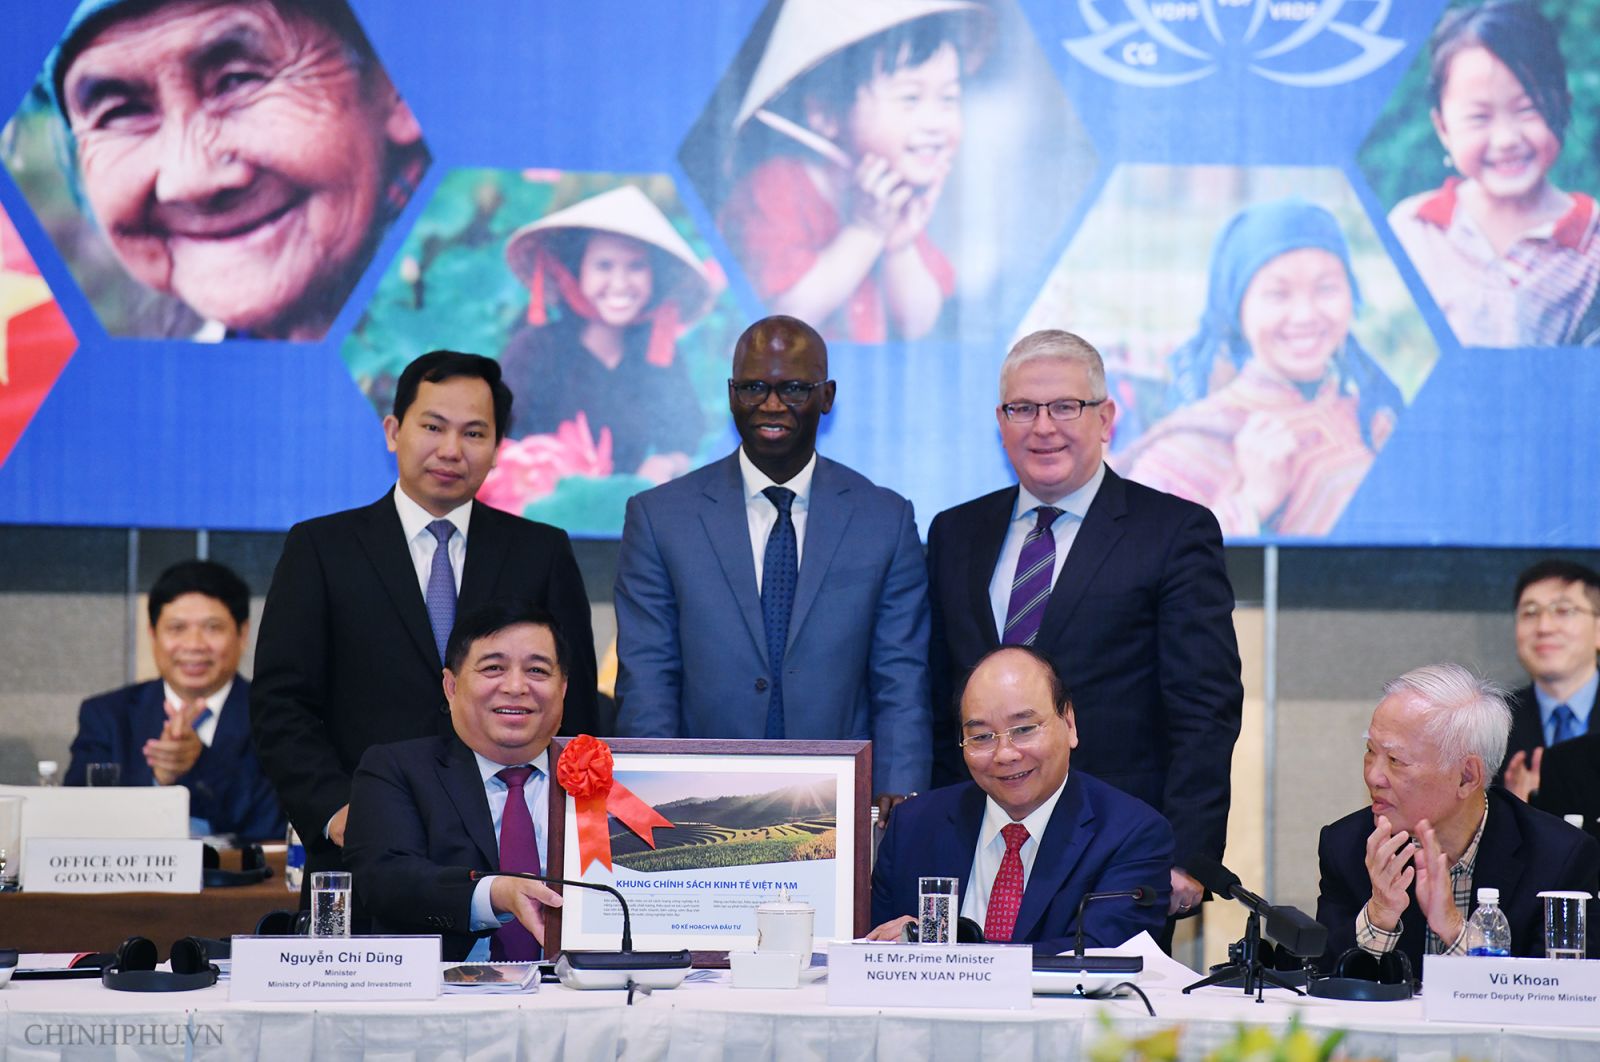 Thủ tướng Nguyễn Xuân Phúc và Bộ trưởng Bộ Kế hoạch và Đầu tư tặng Khung Chính sách Kinh tế Việt Nam cho Ngân hàng Thế giới